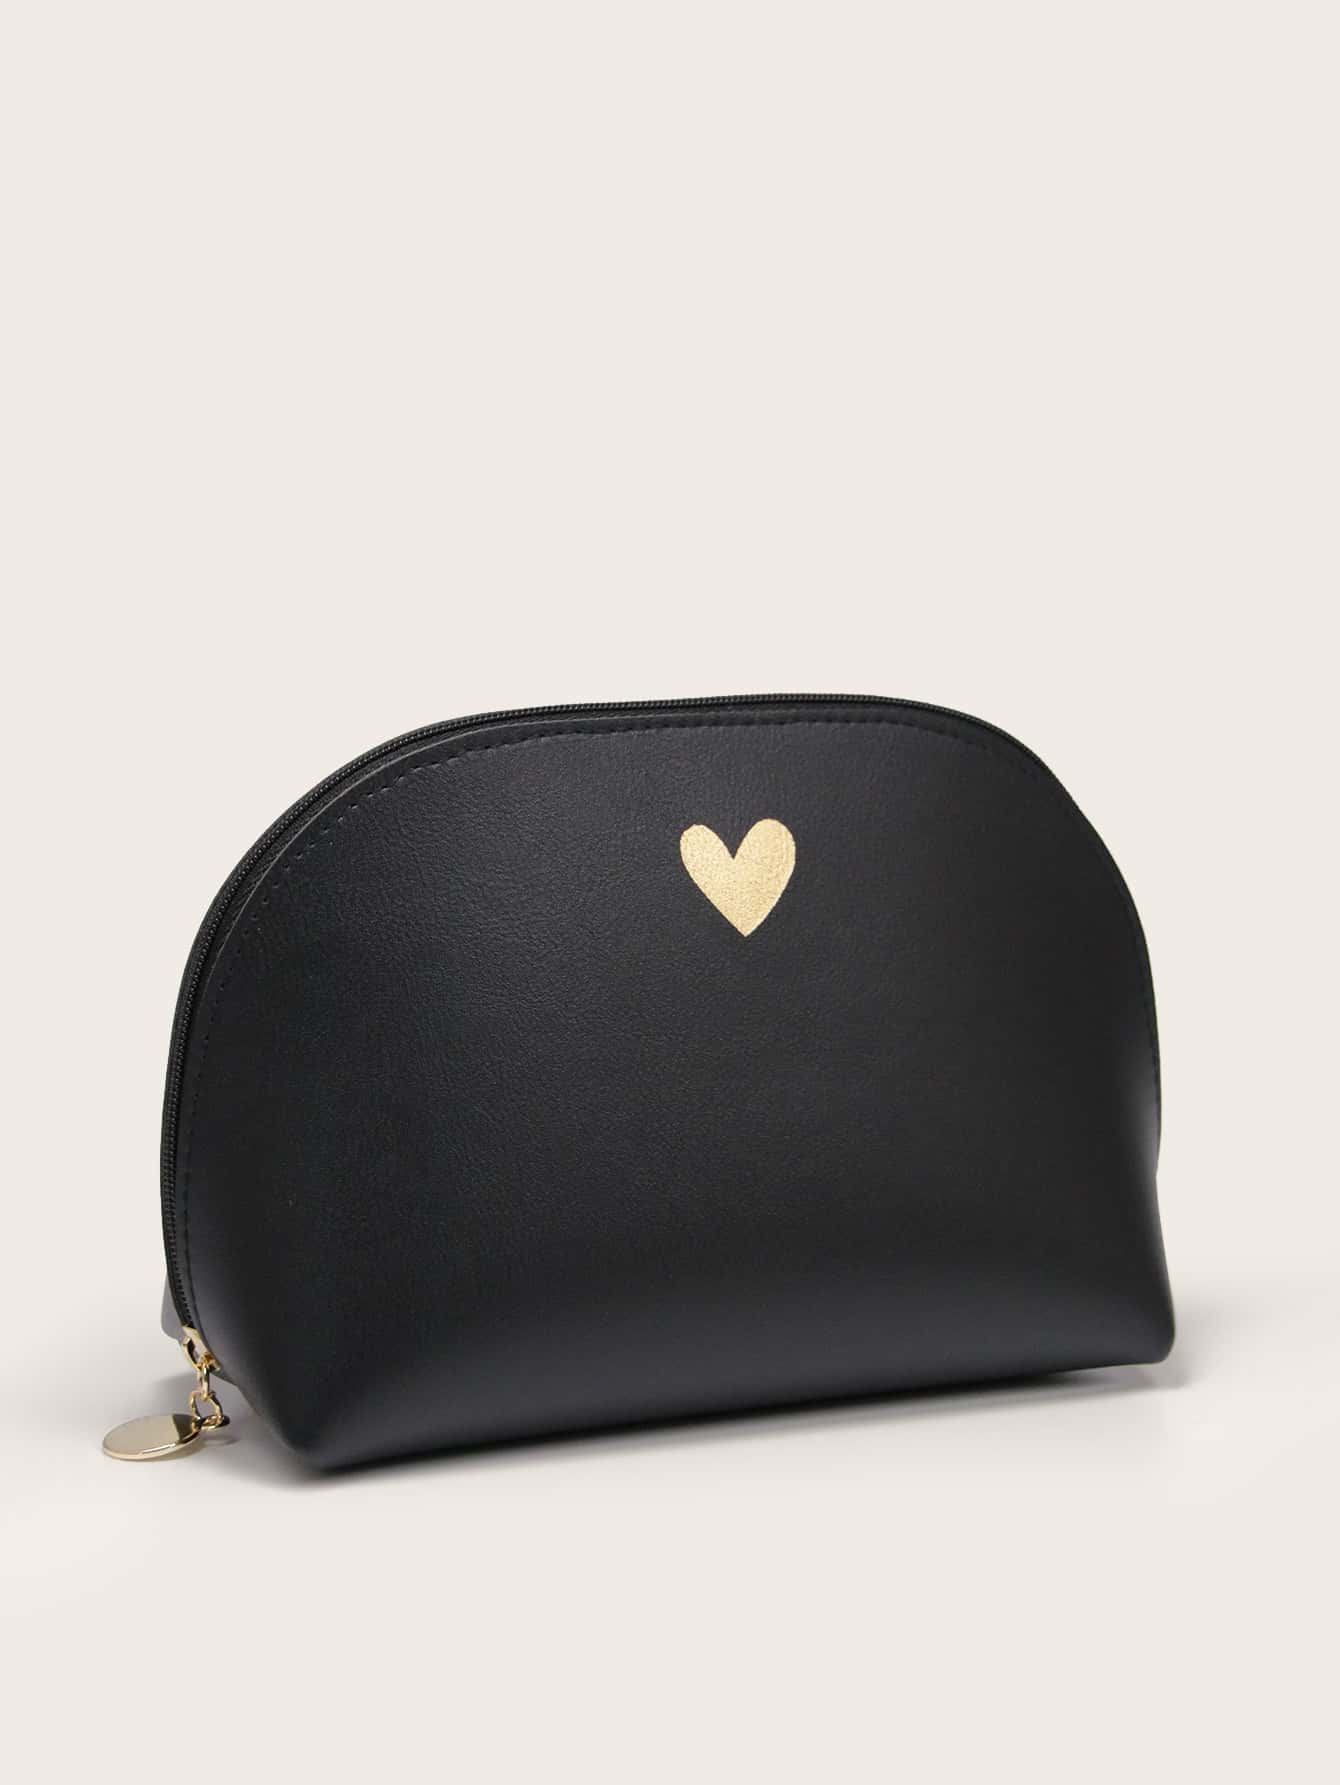 Heart Pattern Roundtop Makeup Bag